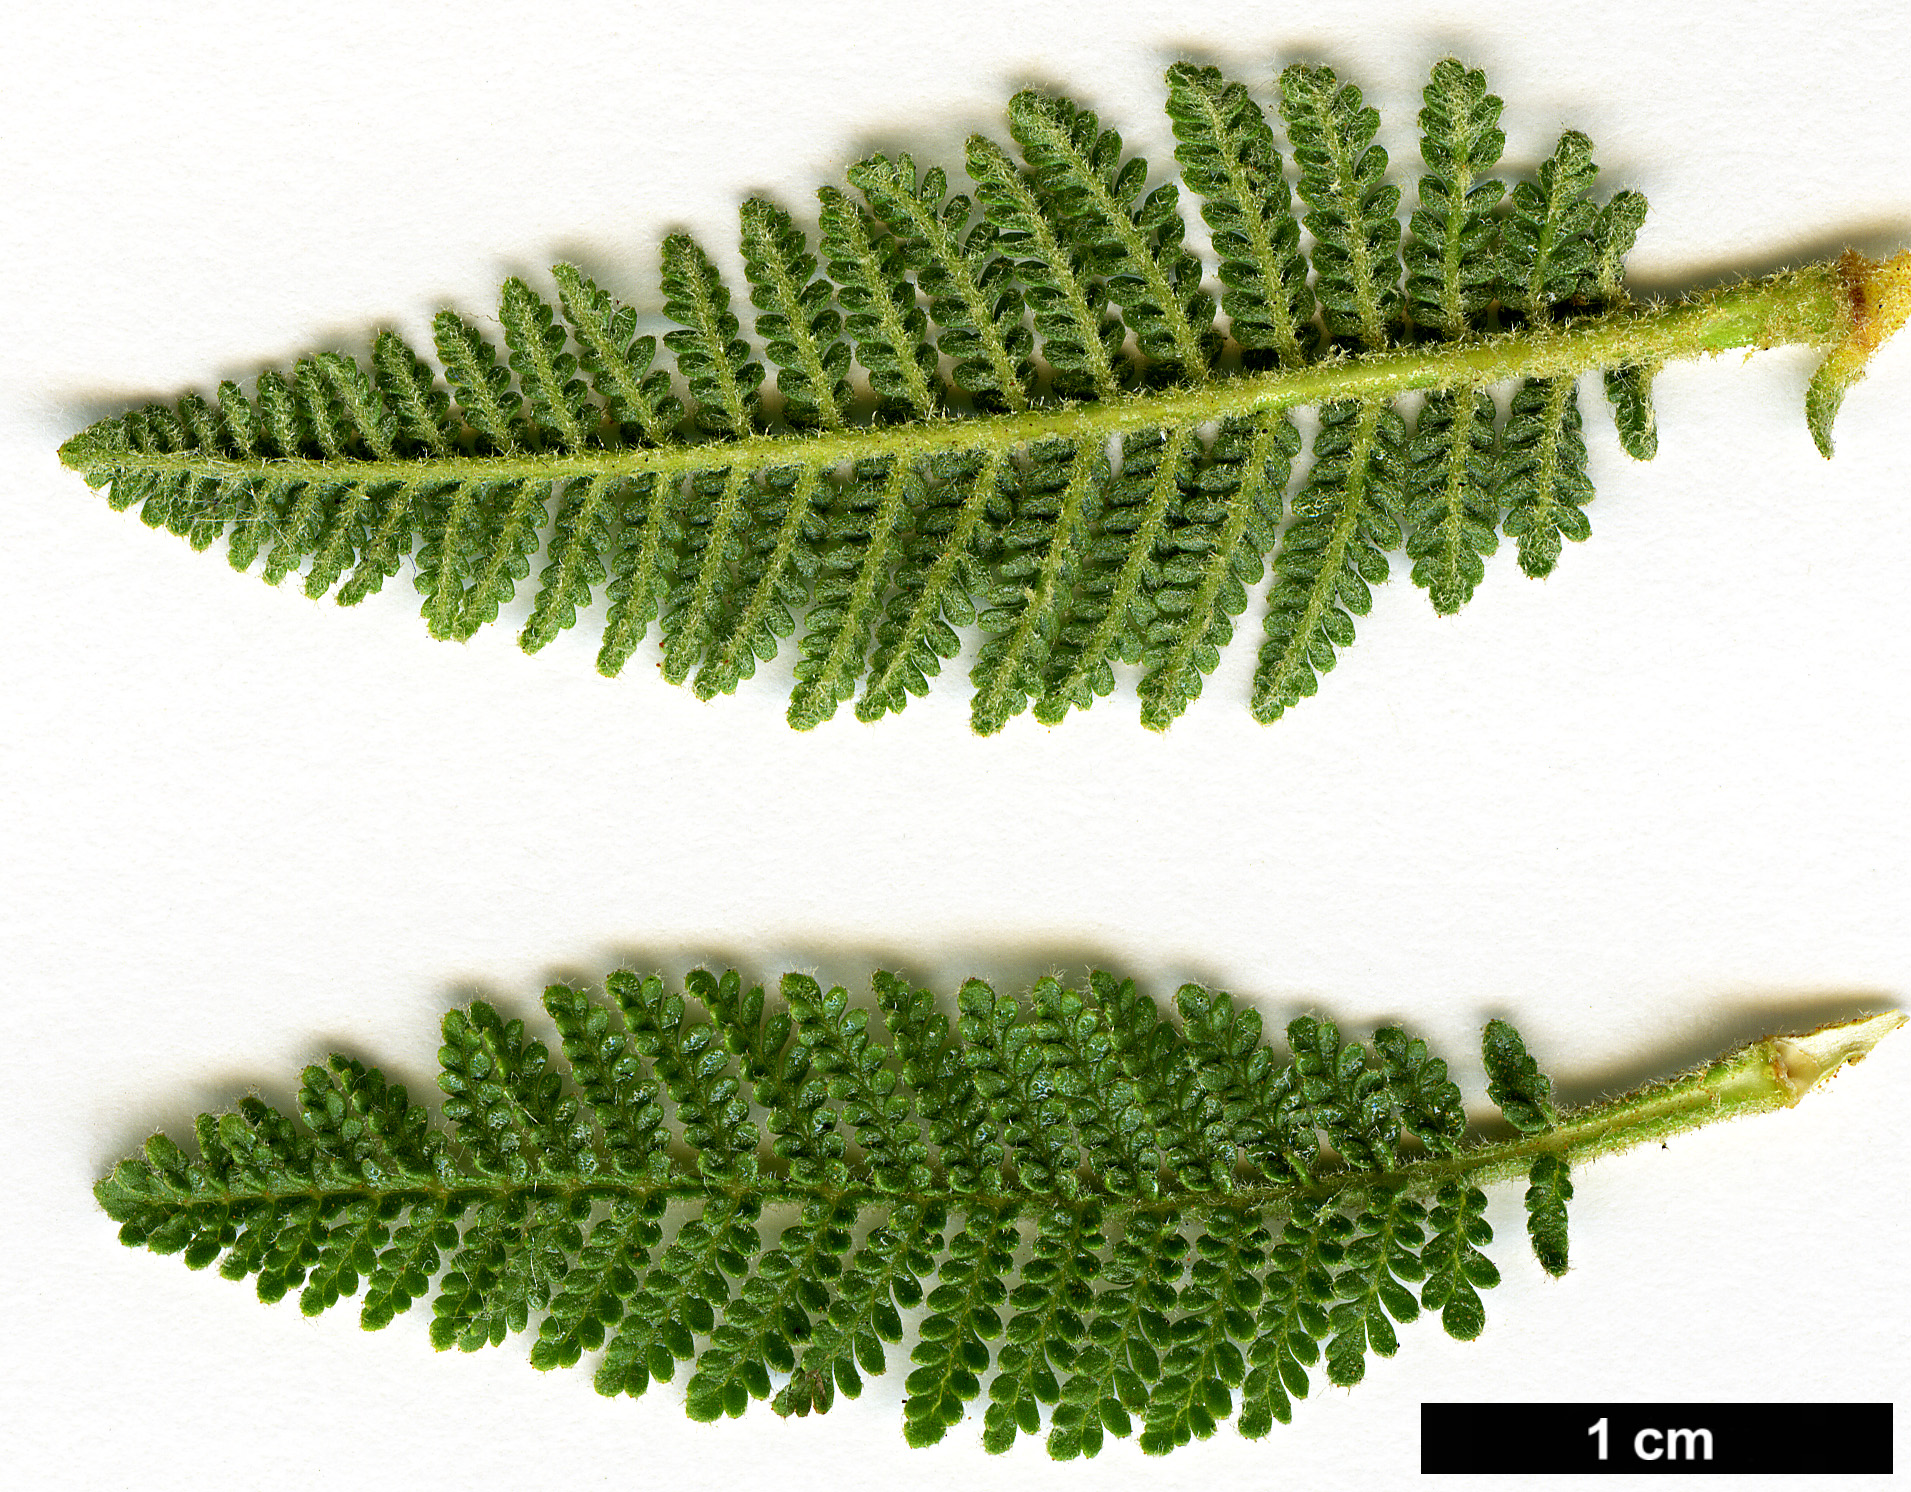 High resolution image: Family: Rosaceae - Genus: Chamaebatiaria - Taxon: millefolium